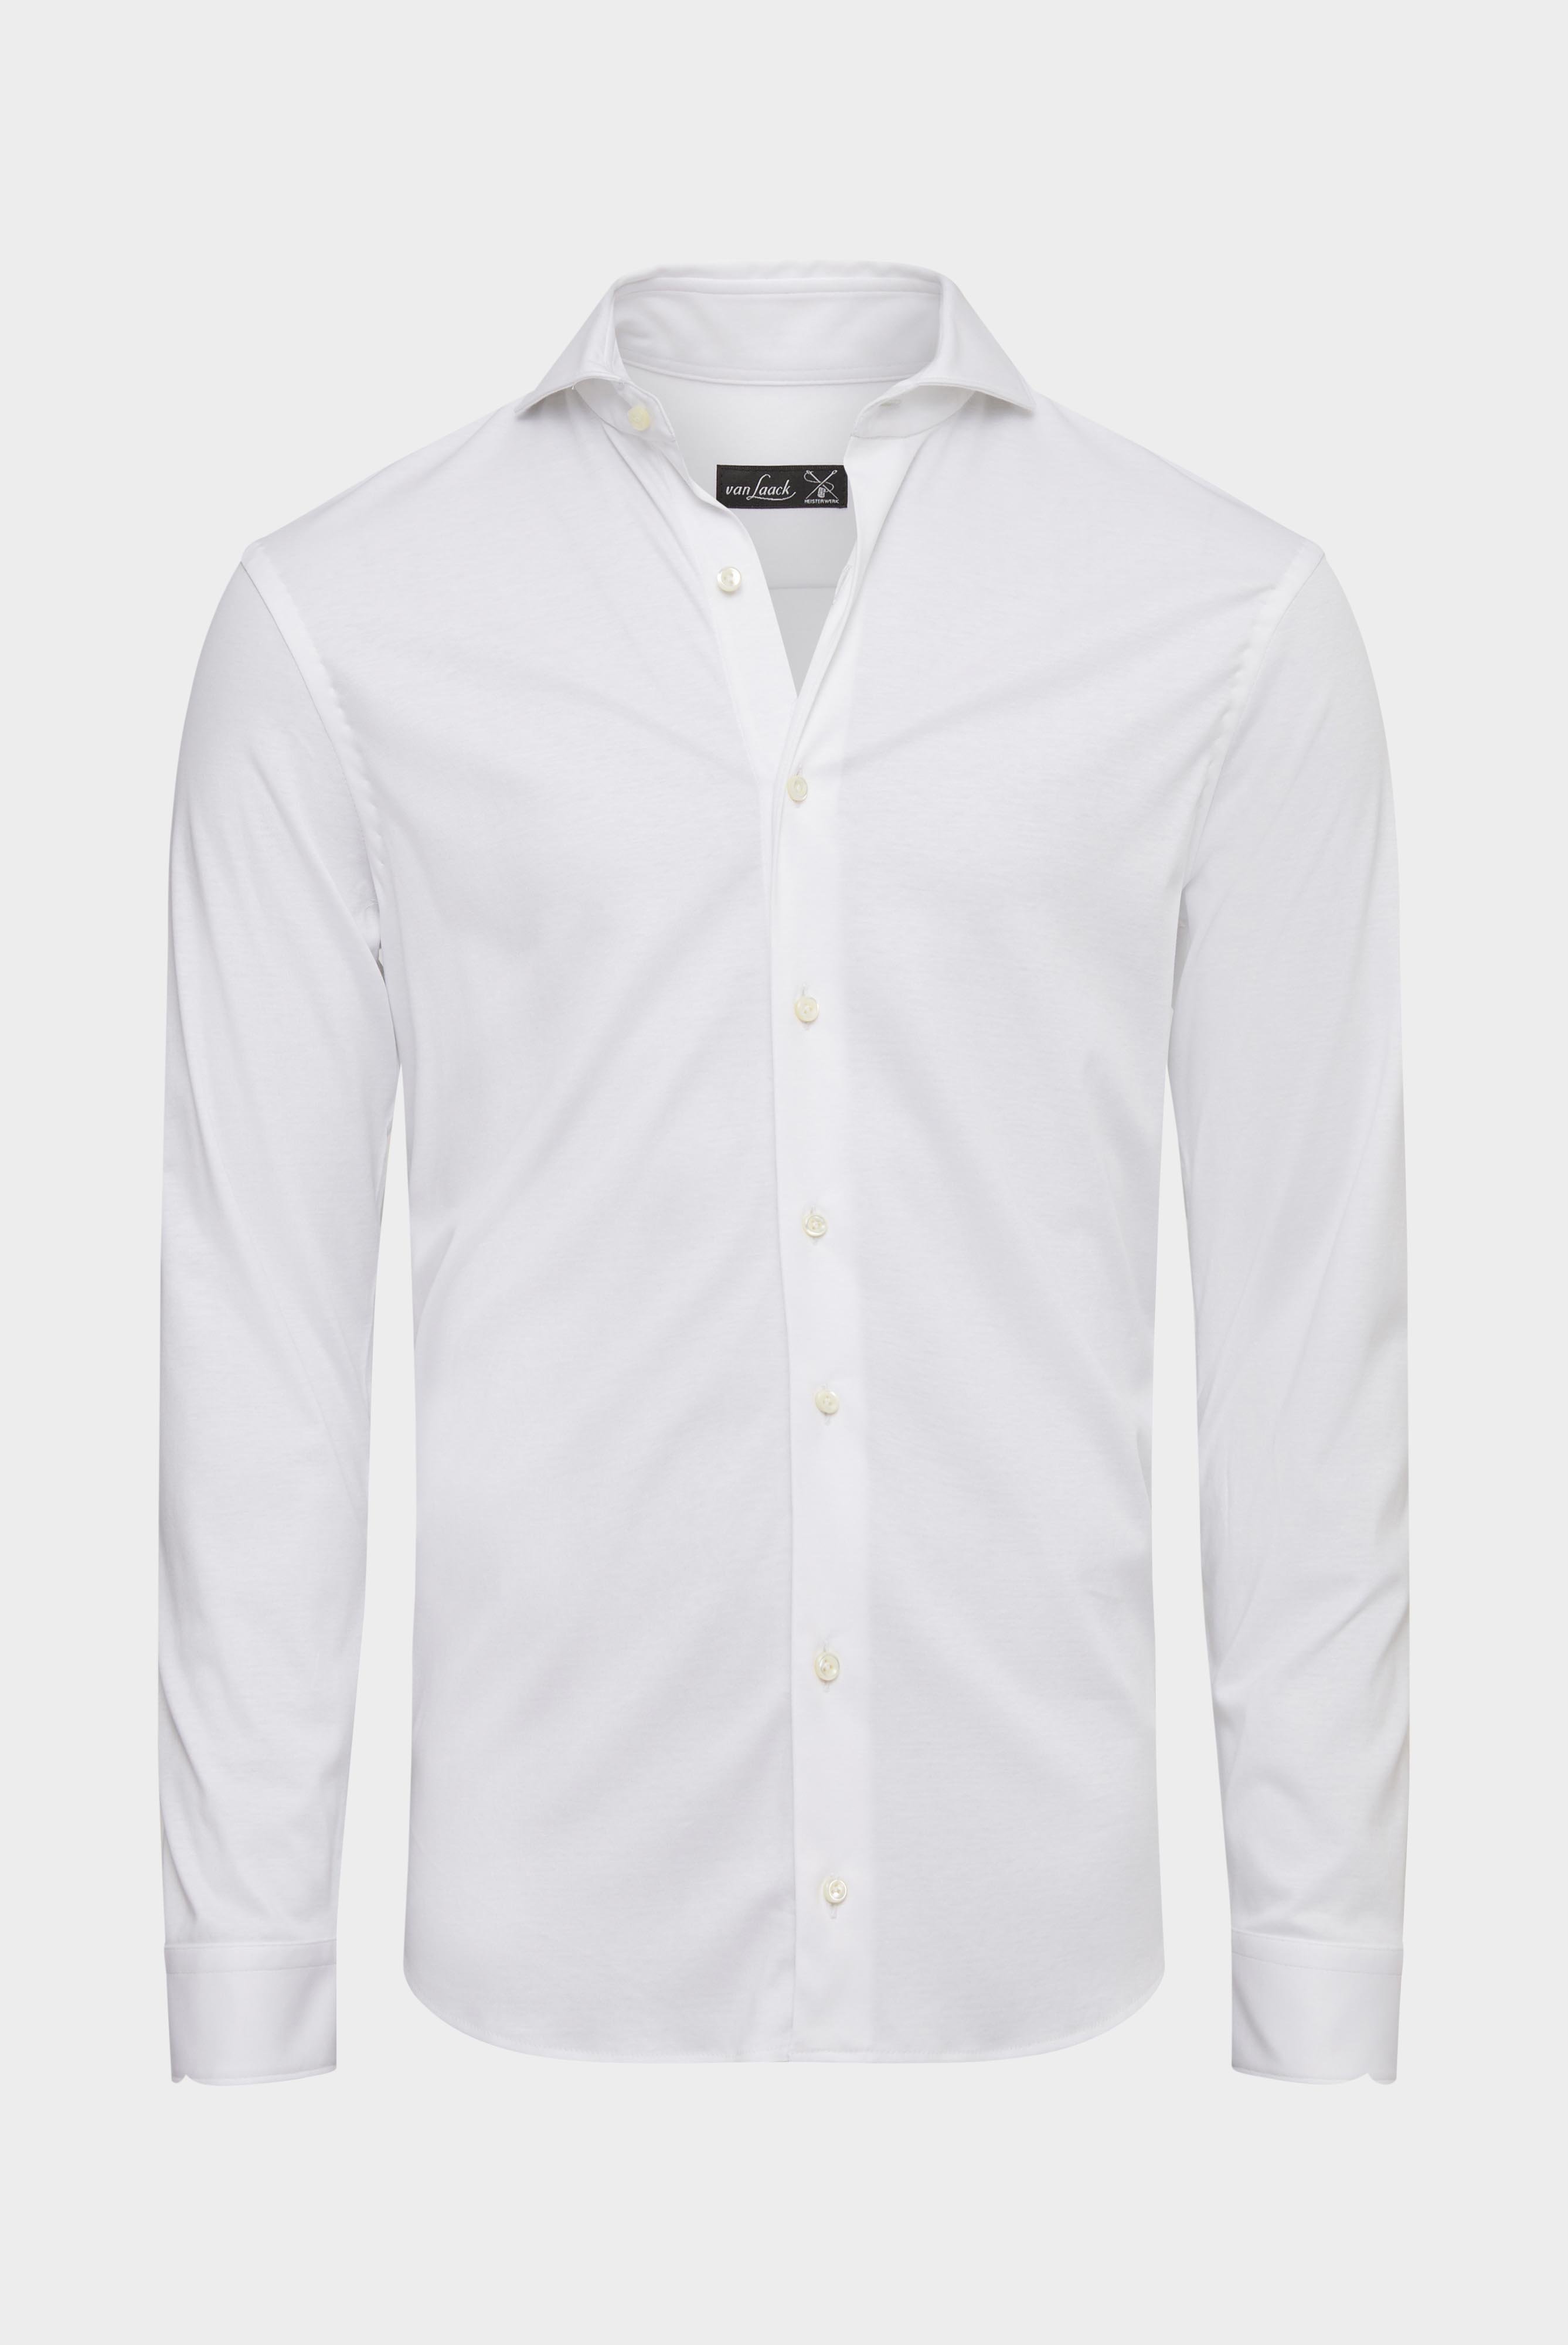 Jersey Hemden+Jersey Hemd aus Schweizer Baumwolle Slim Fit+20.1682.UC.180031.000.XL